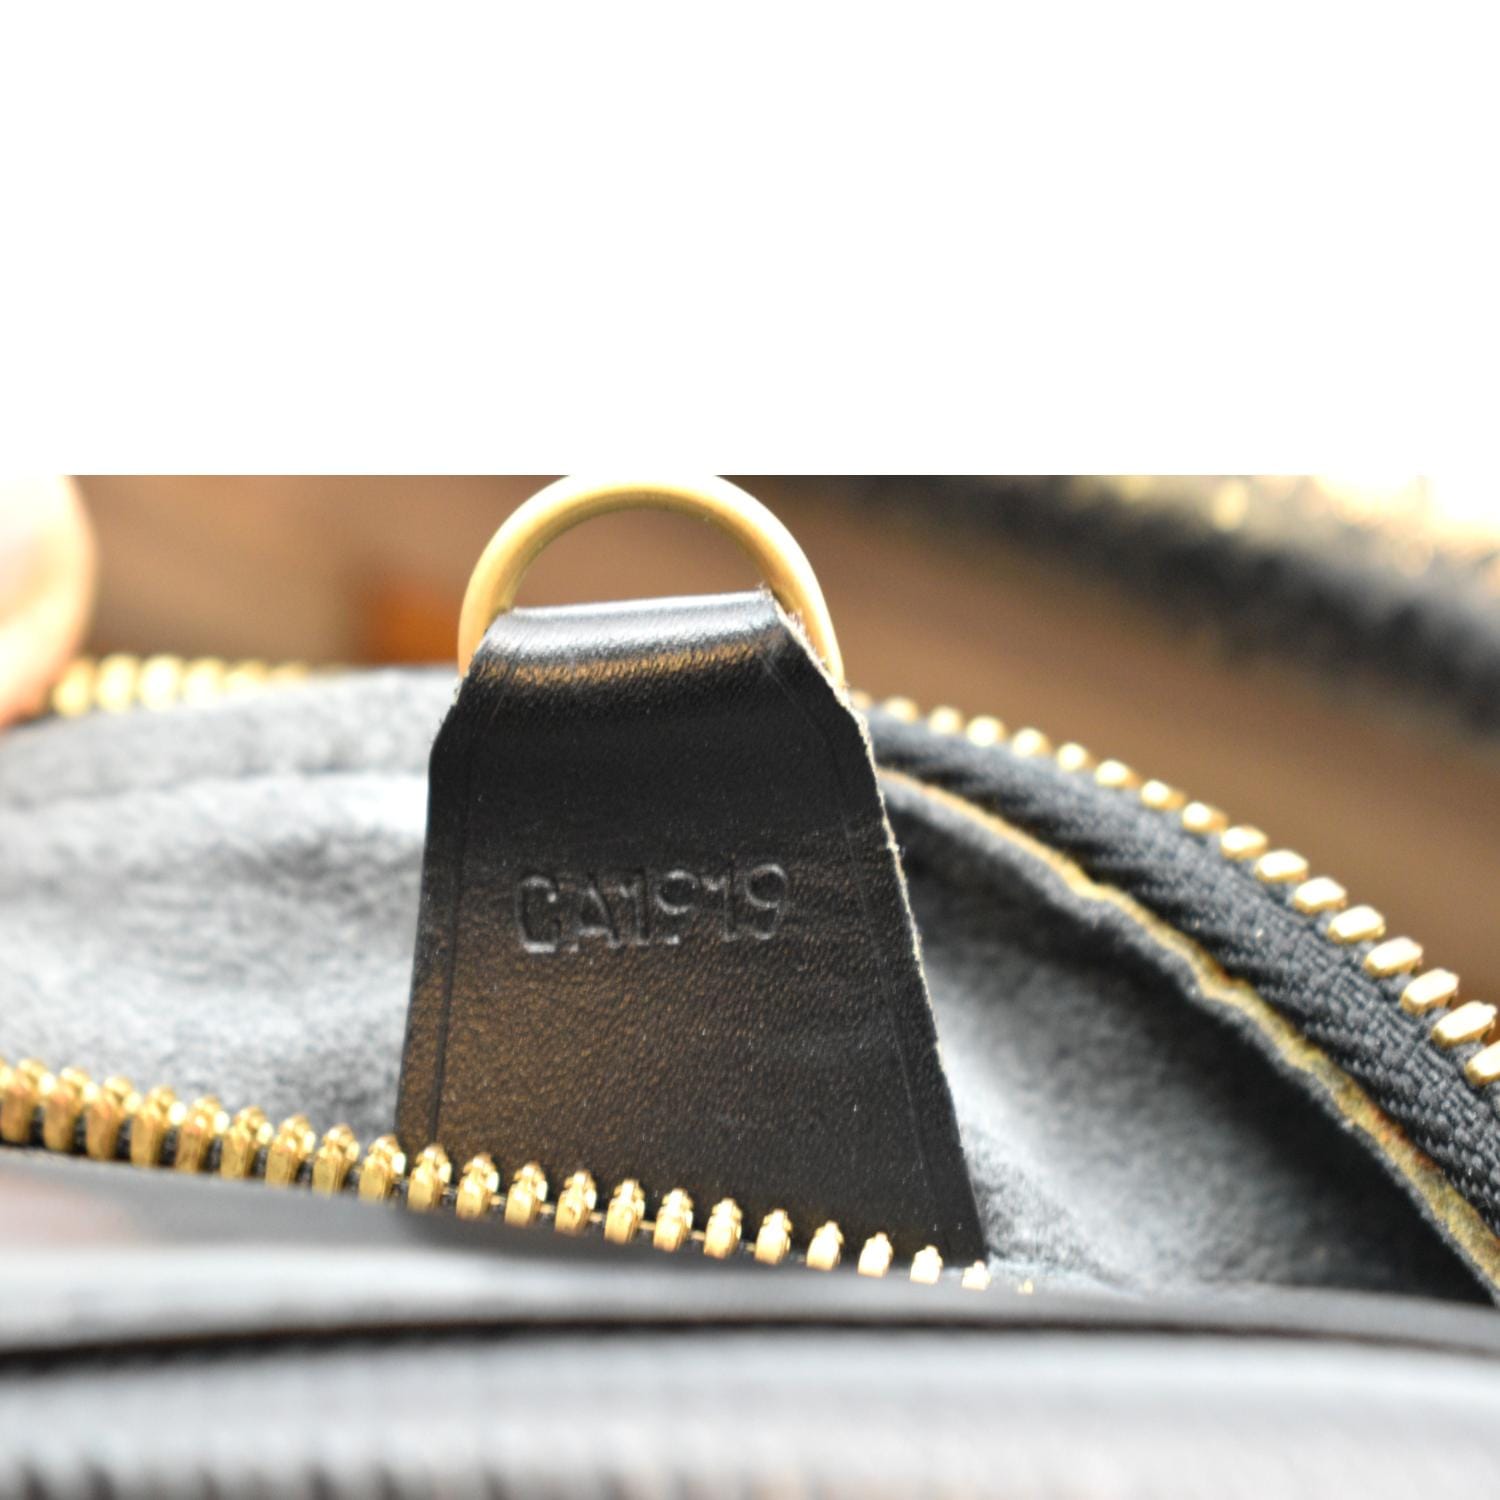 LOUIS VUITTON LV Voltaire Shoulder Bag Epi Leather Black Gold M52432  35YB641